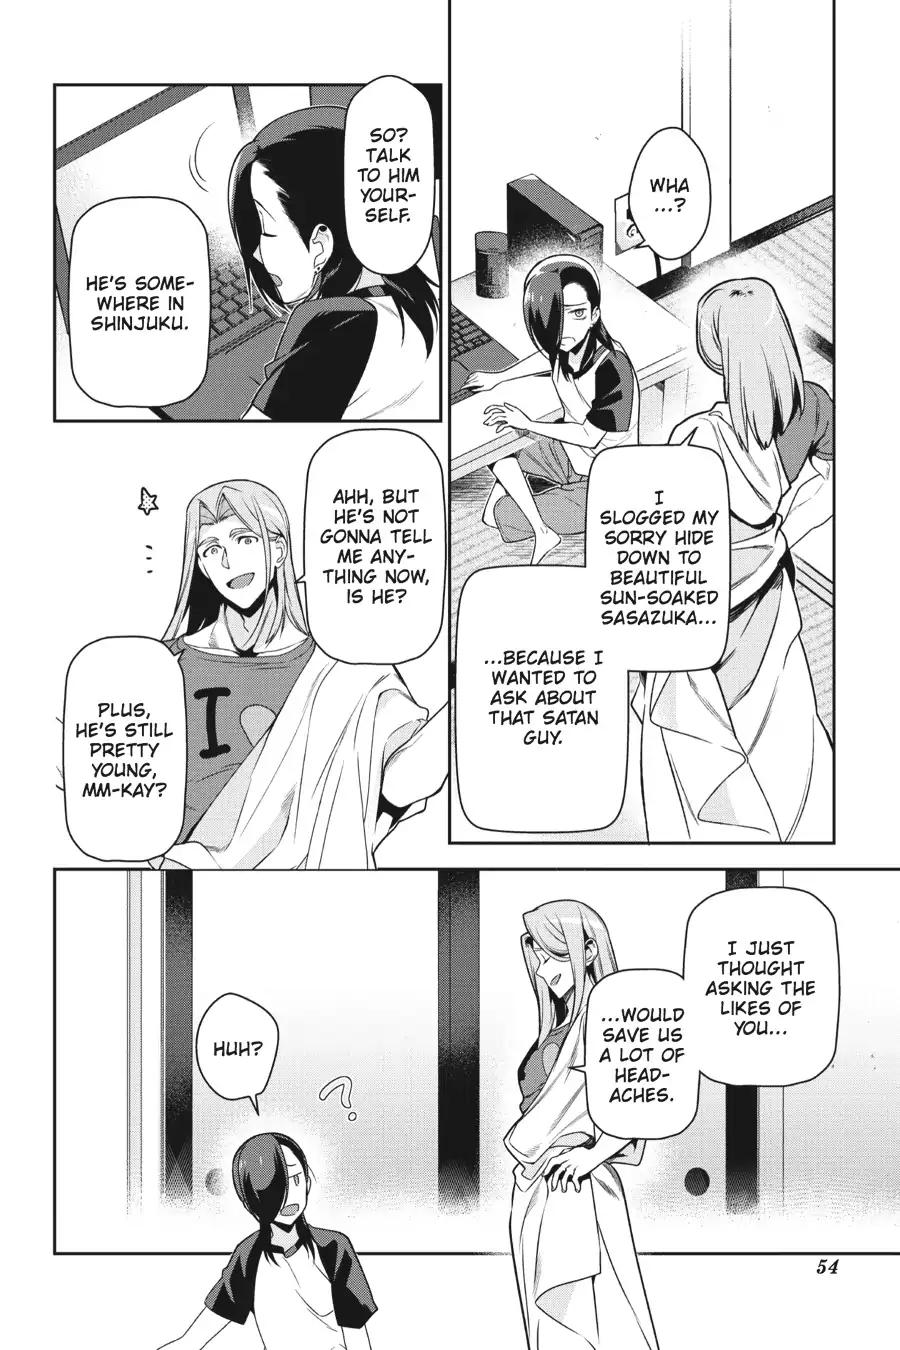 Hataraku Maousama! chapter 48 page 7